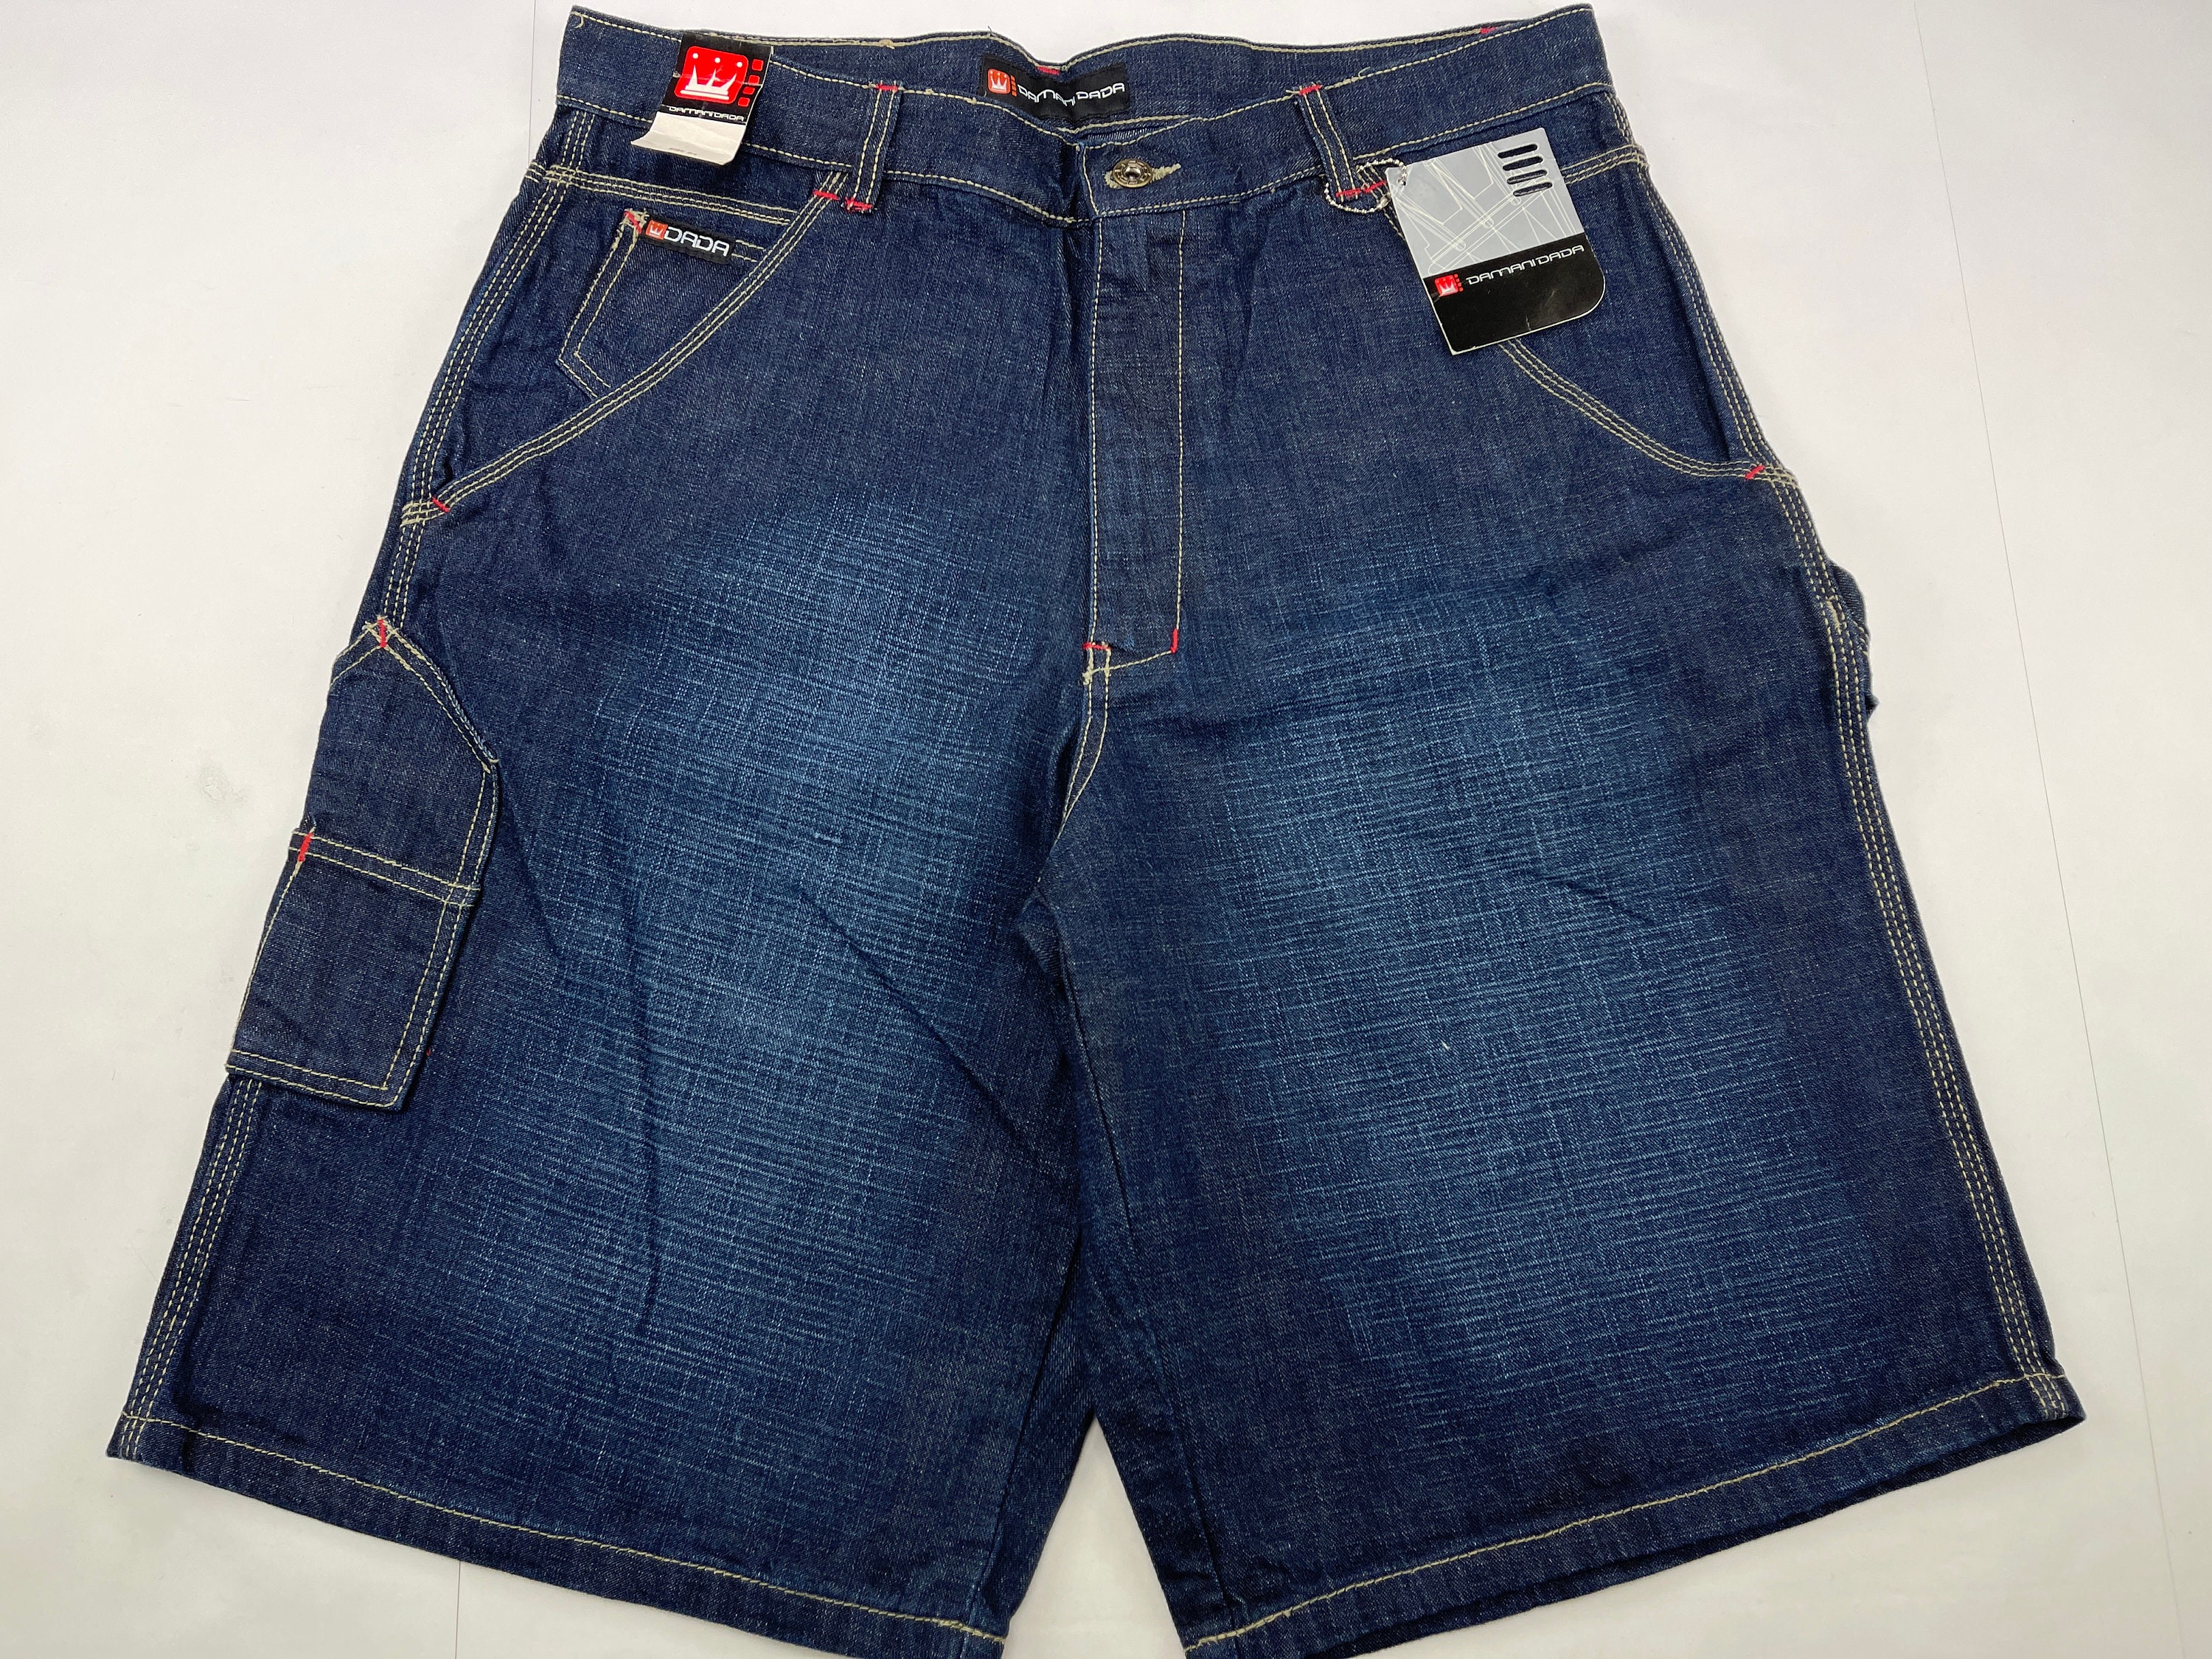 Dada Supreme Jeans Shorts Vintage Damani Baggy Jeans 90s Hip - Etsy Israel